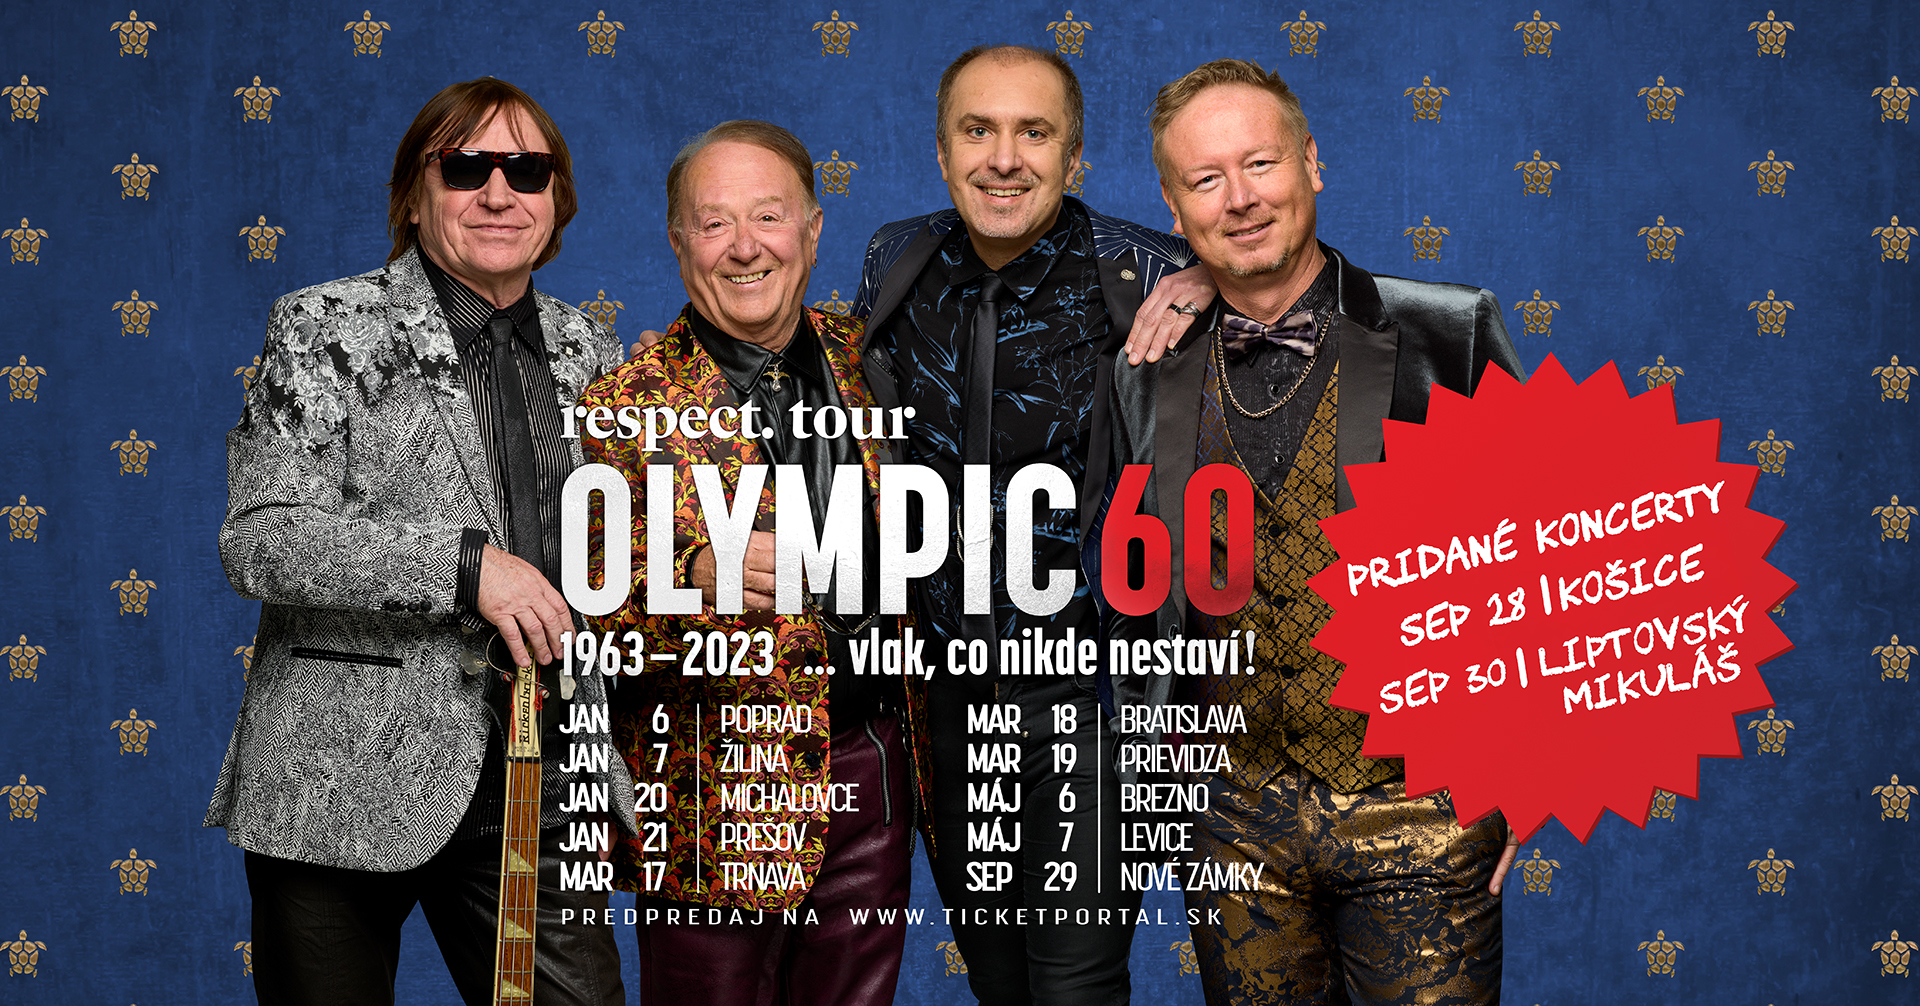 Respect tour Olympic 60 slovenské koncerty